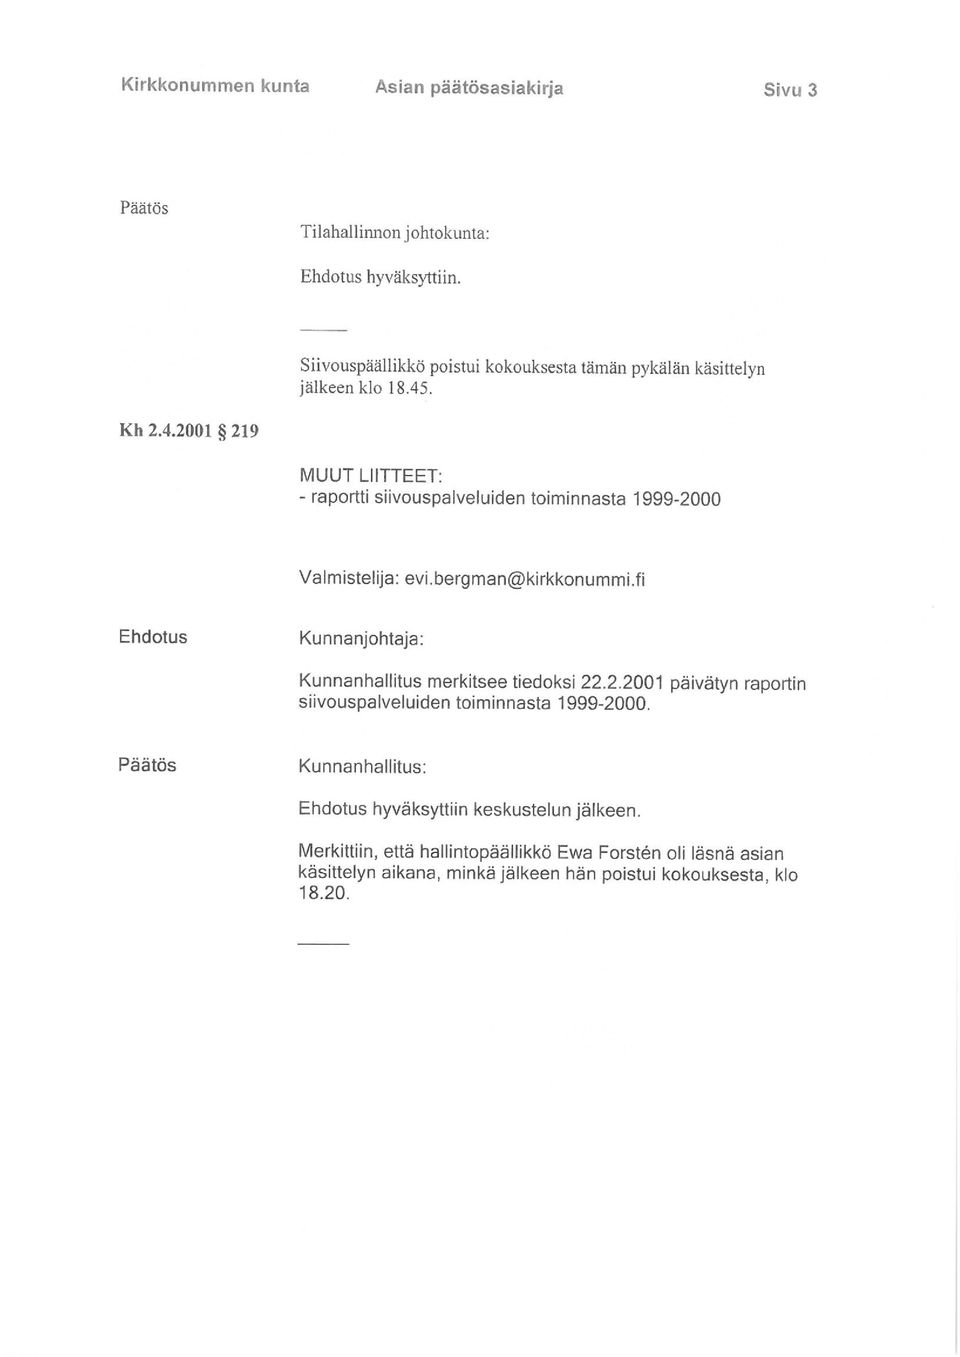 . Kh 2.4.2001 219 MUUT LIITTEET: - raportti siivouspalveluiden toiminnasta 1999-2000 Valmistelija: evi.bergman@kirkkonummi.